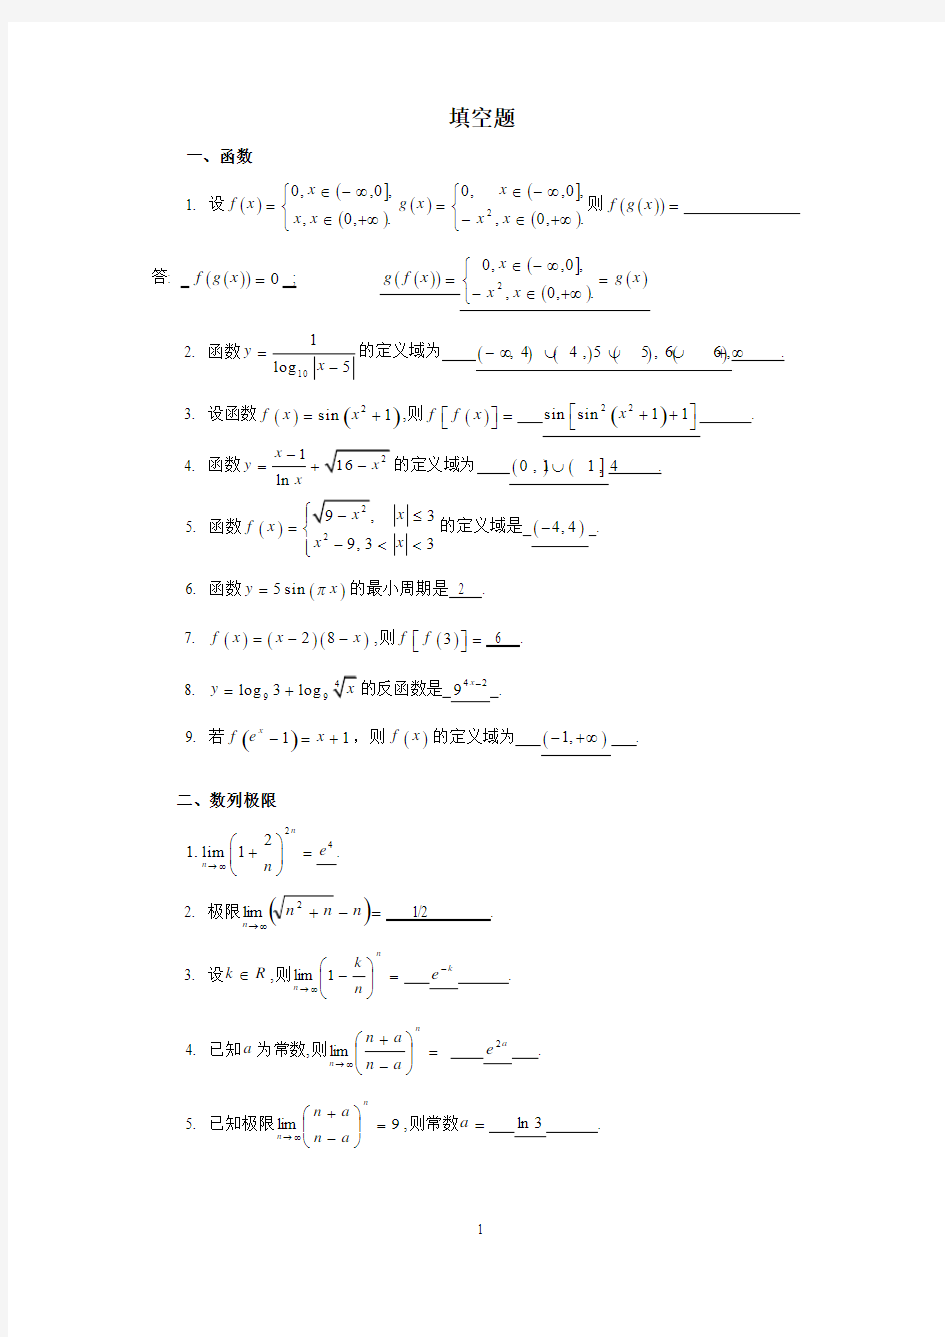 数学分析(1)期末模拟考试题(填空部分)